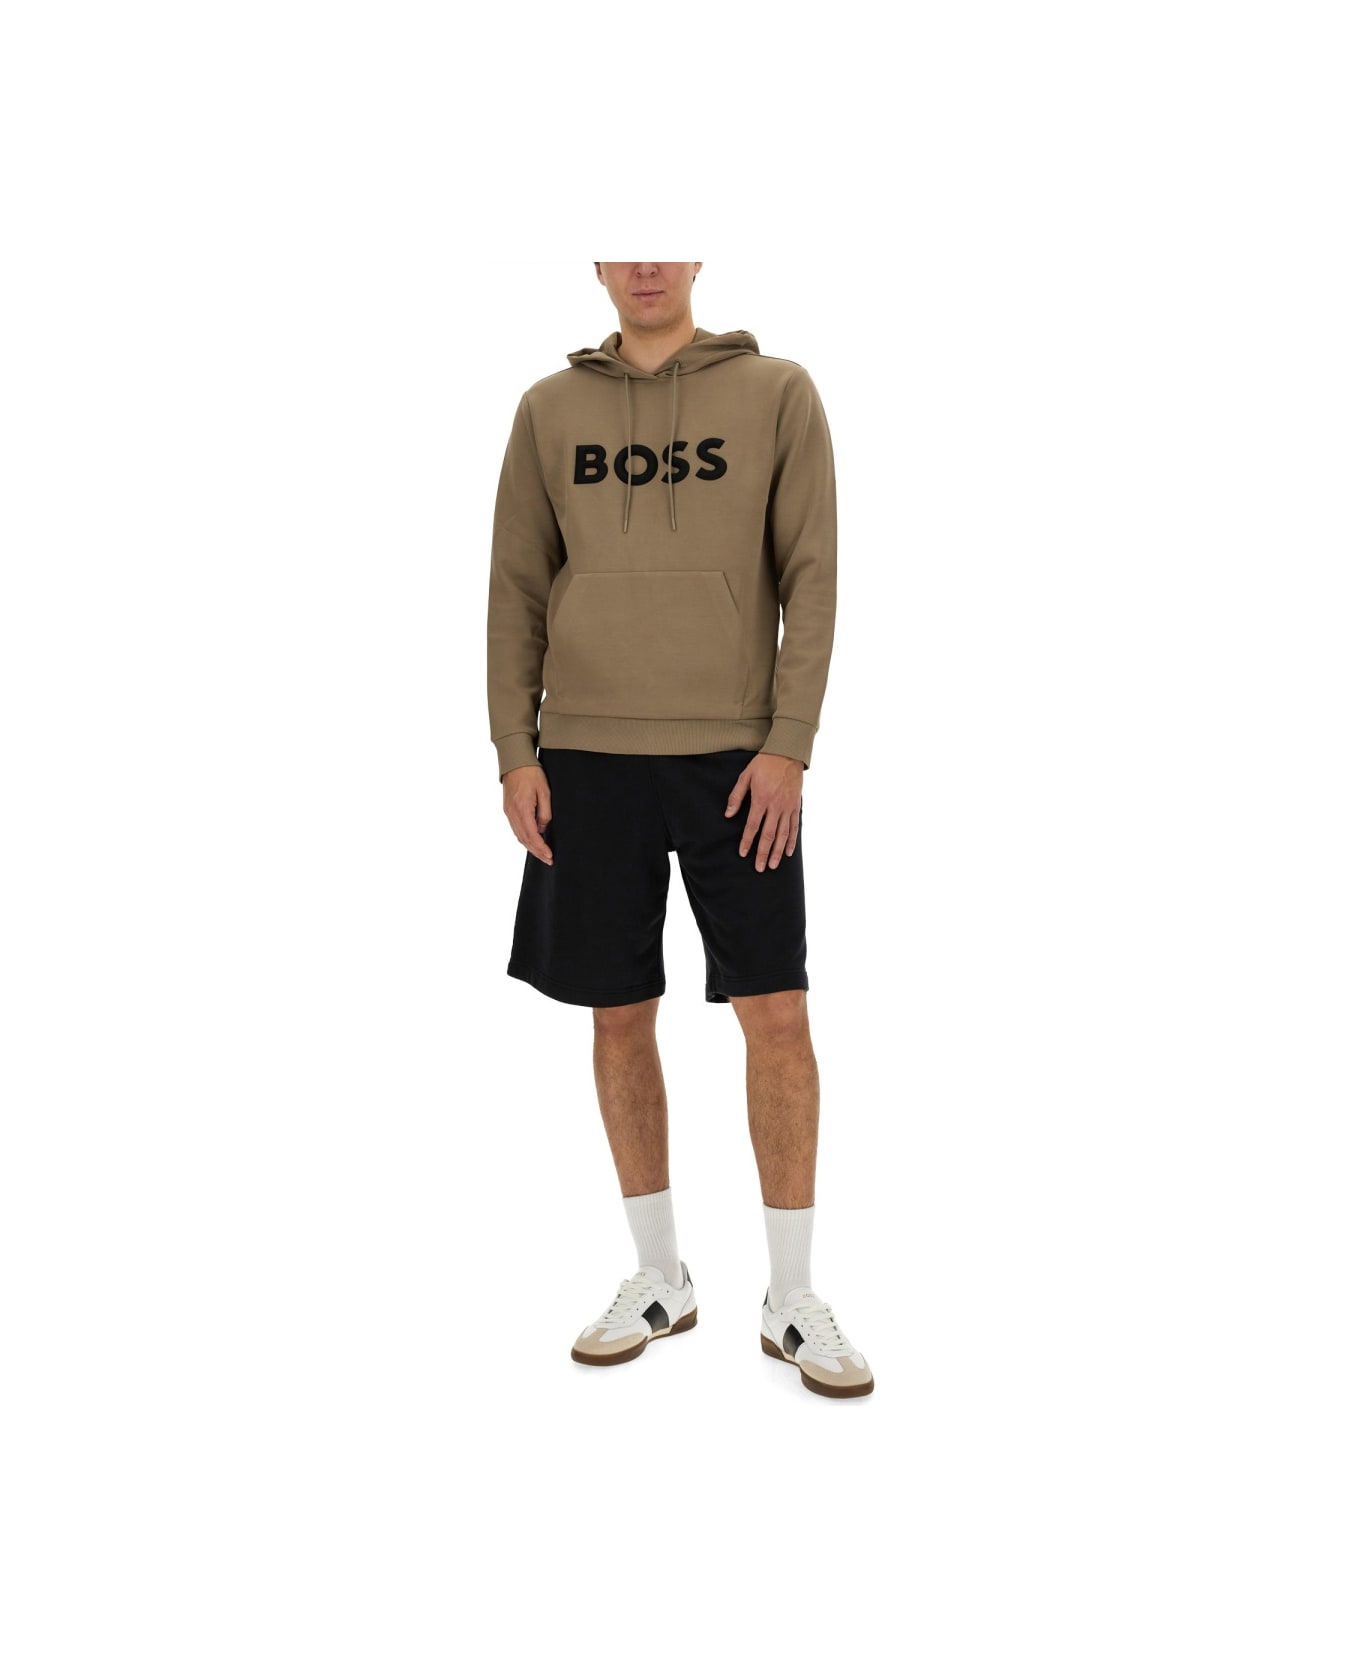 Hugo Boss Sweatshirt With Logo - BEIGE